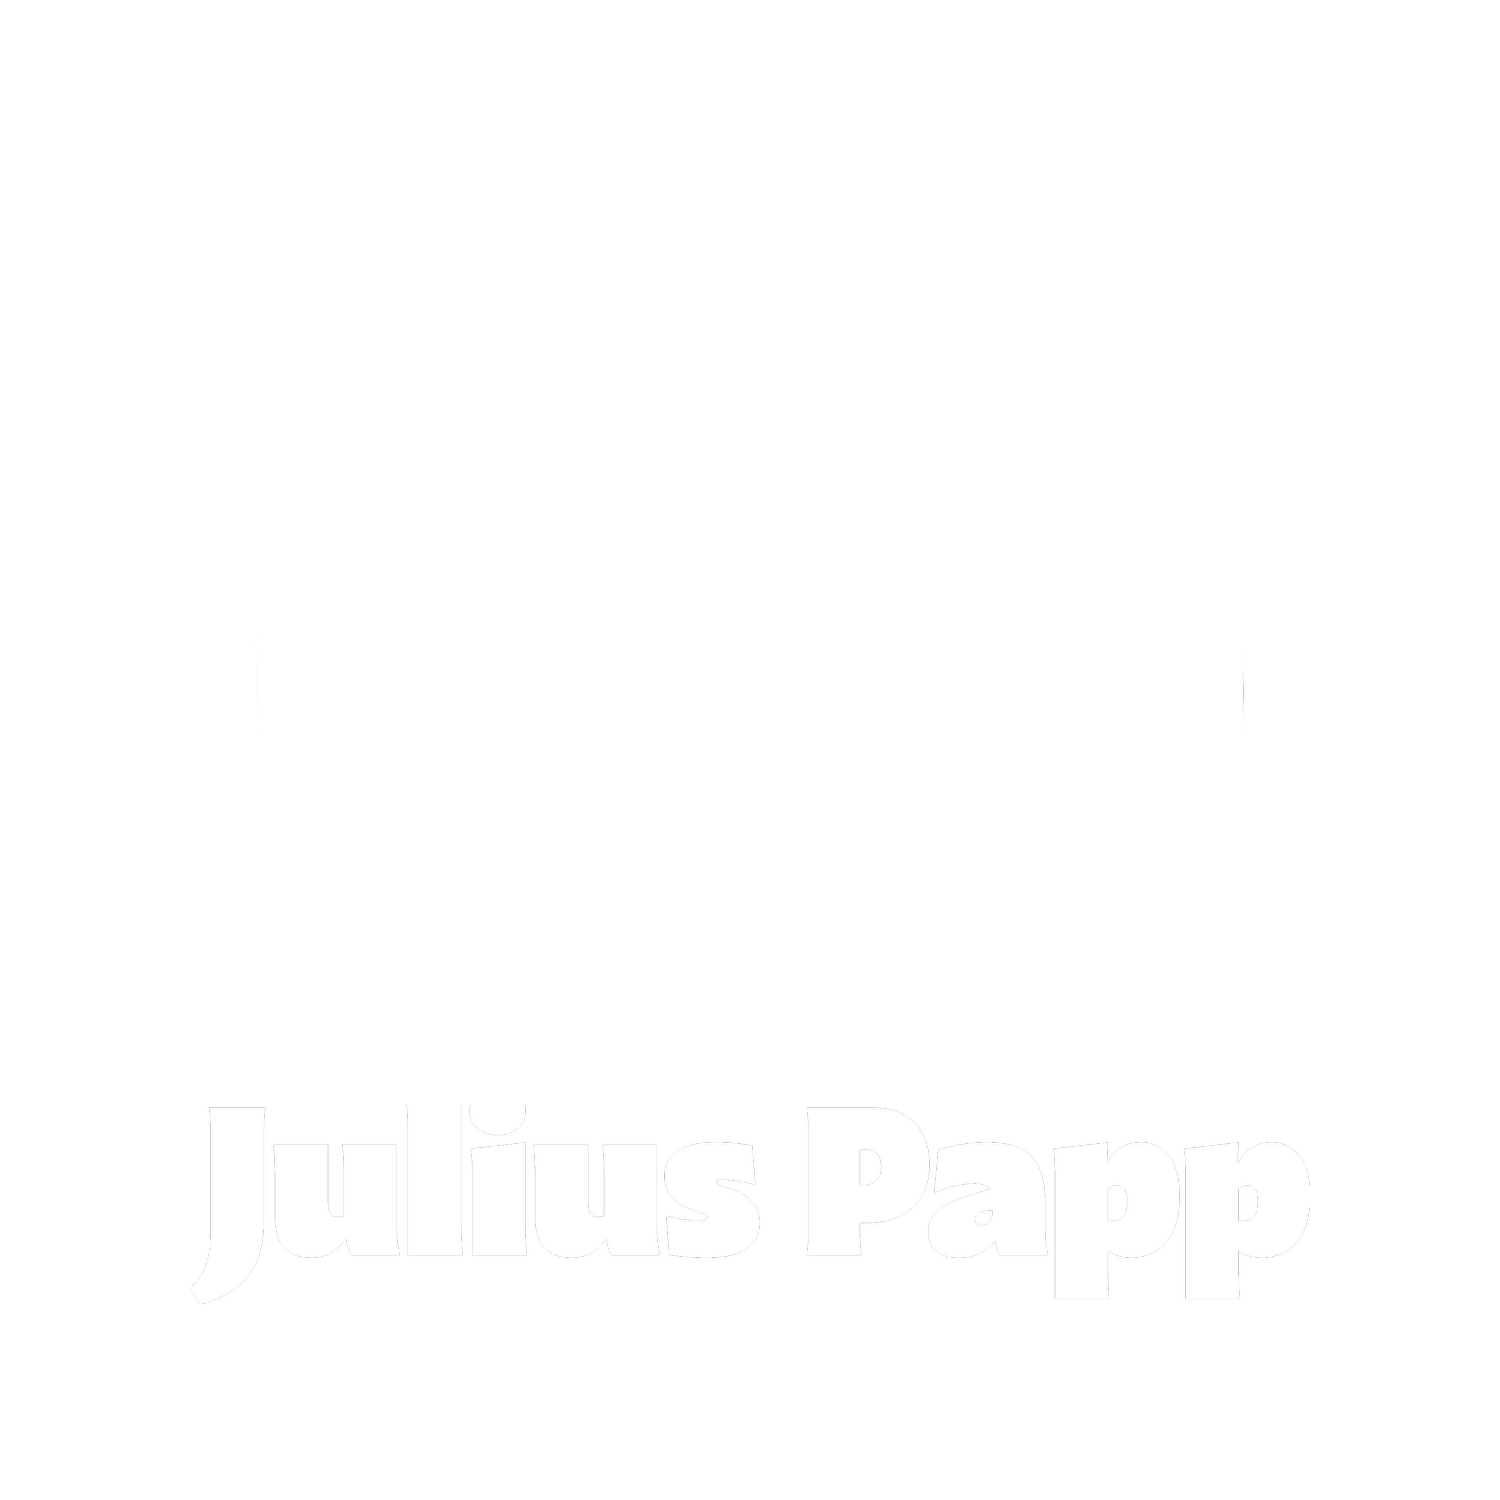 Julius Papp